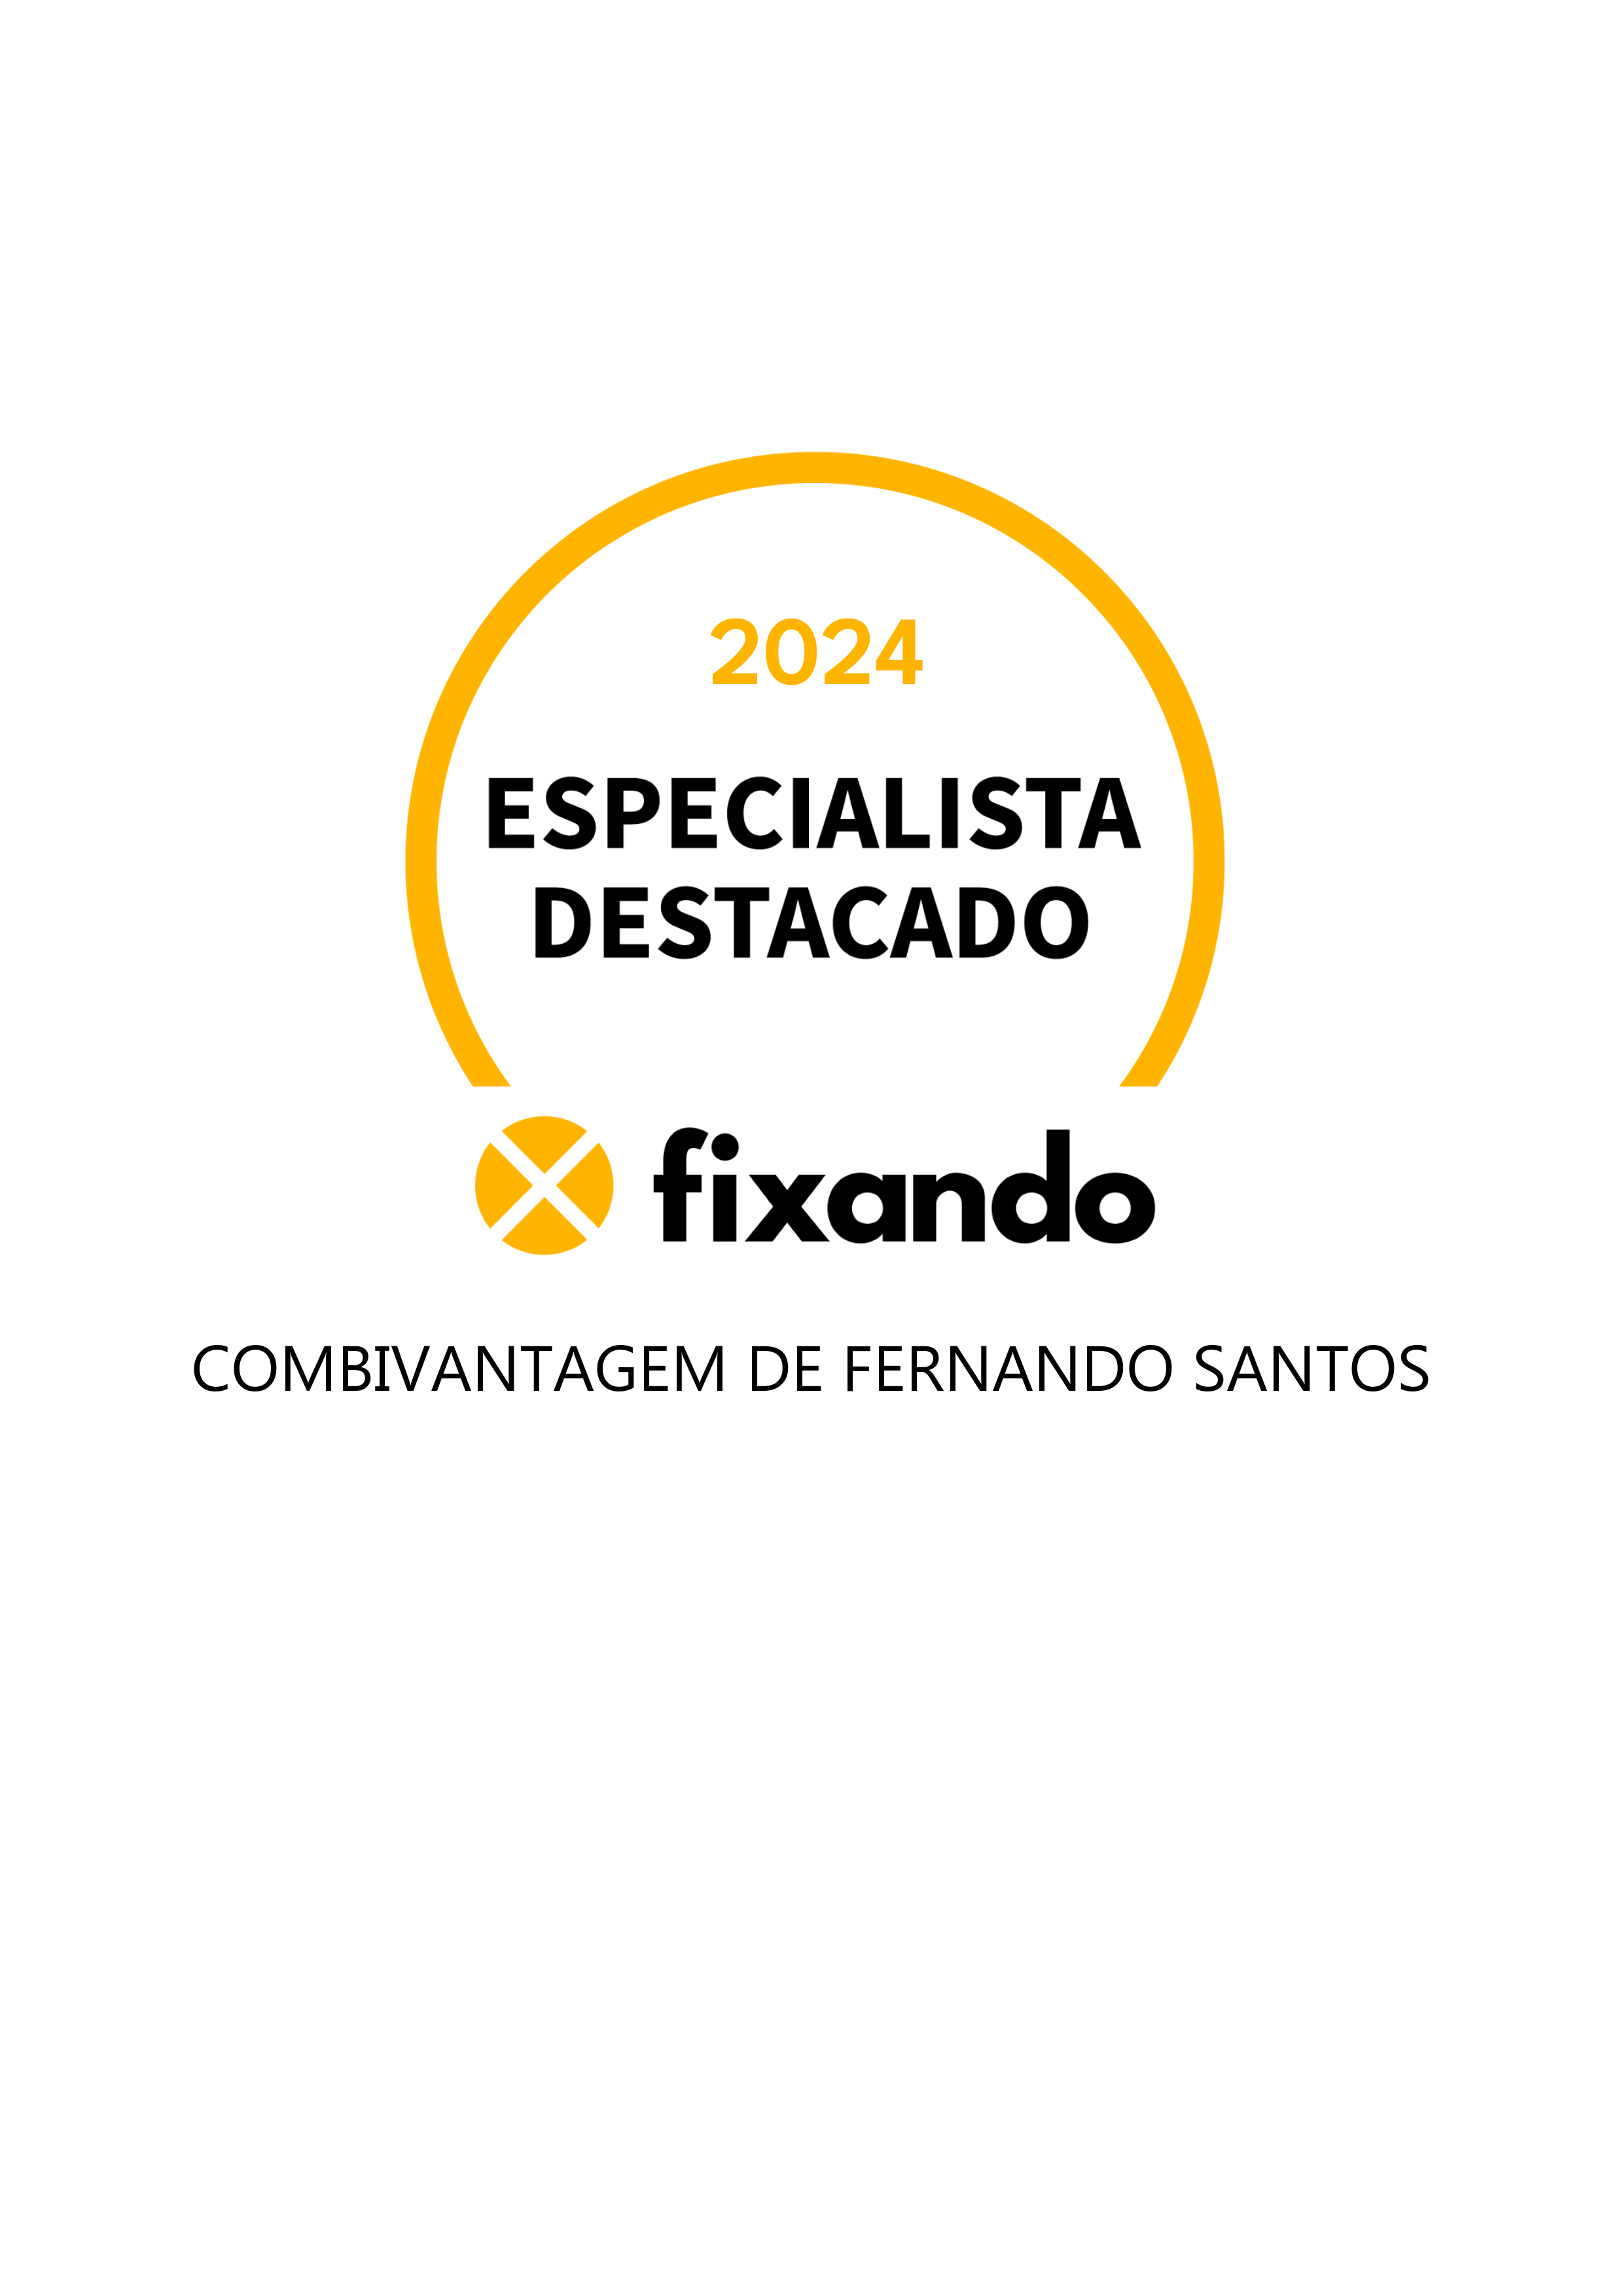 Combivantagem de Fernando Santos - Cadaval - Instalação de Jacuzzi e Spa